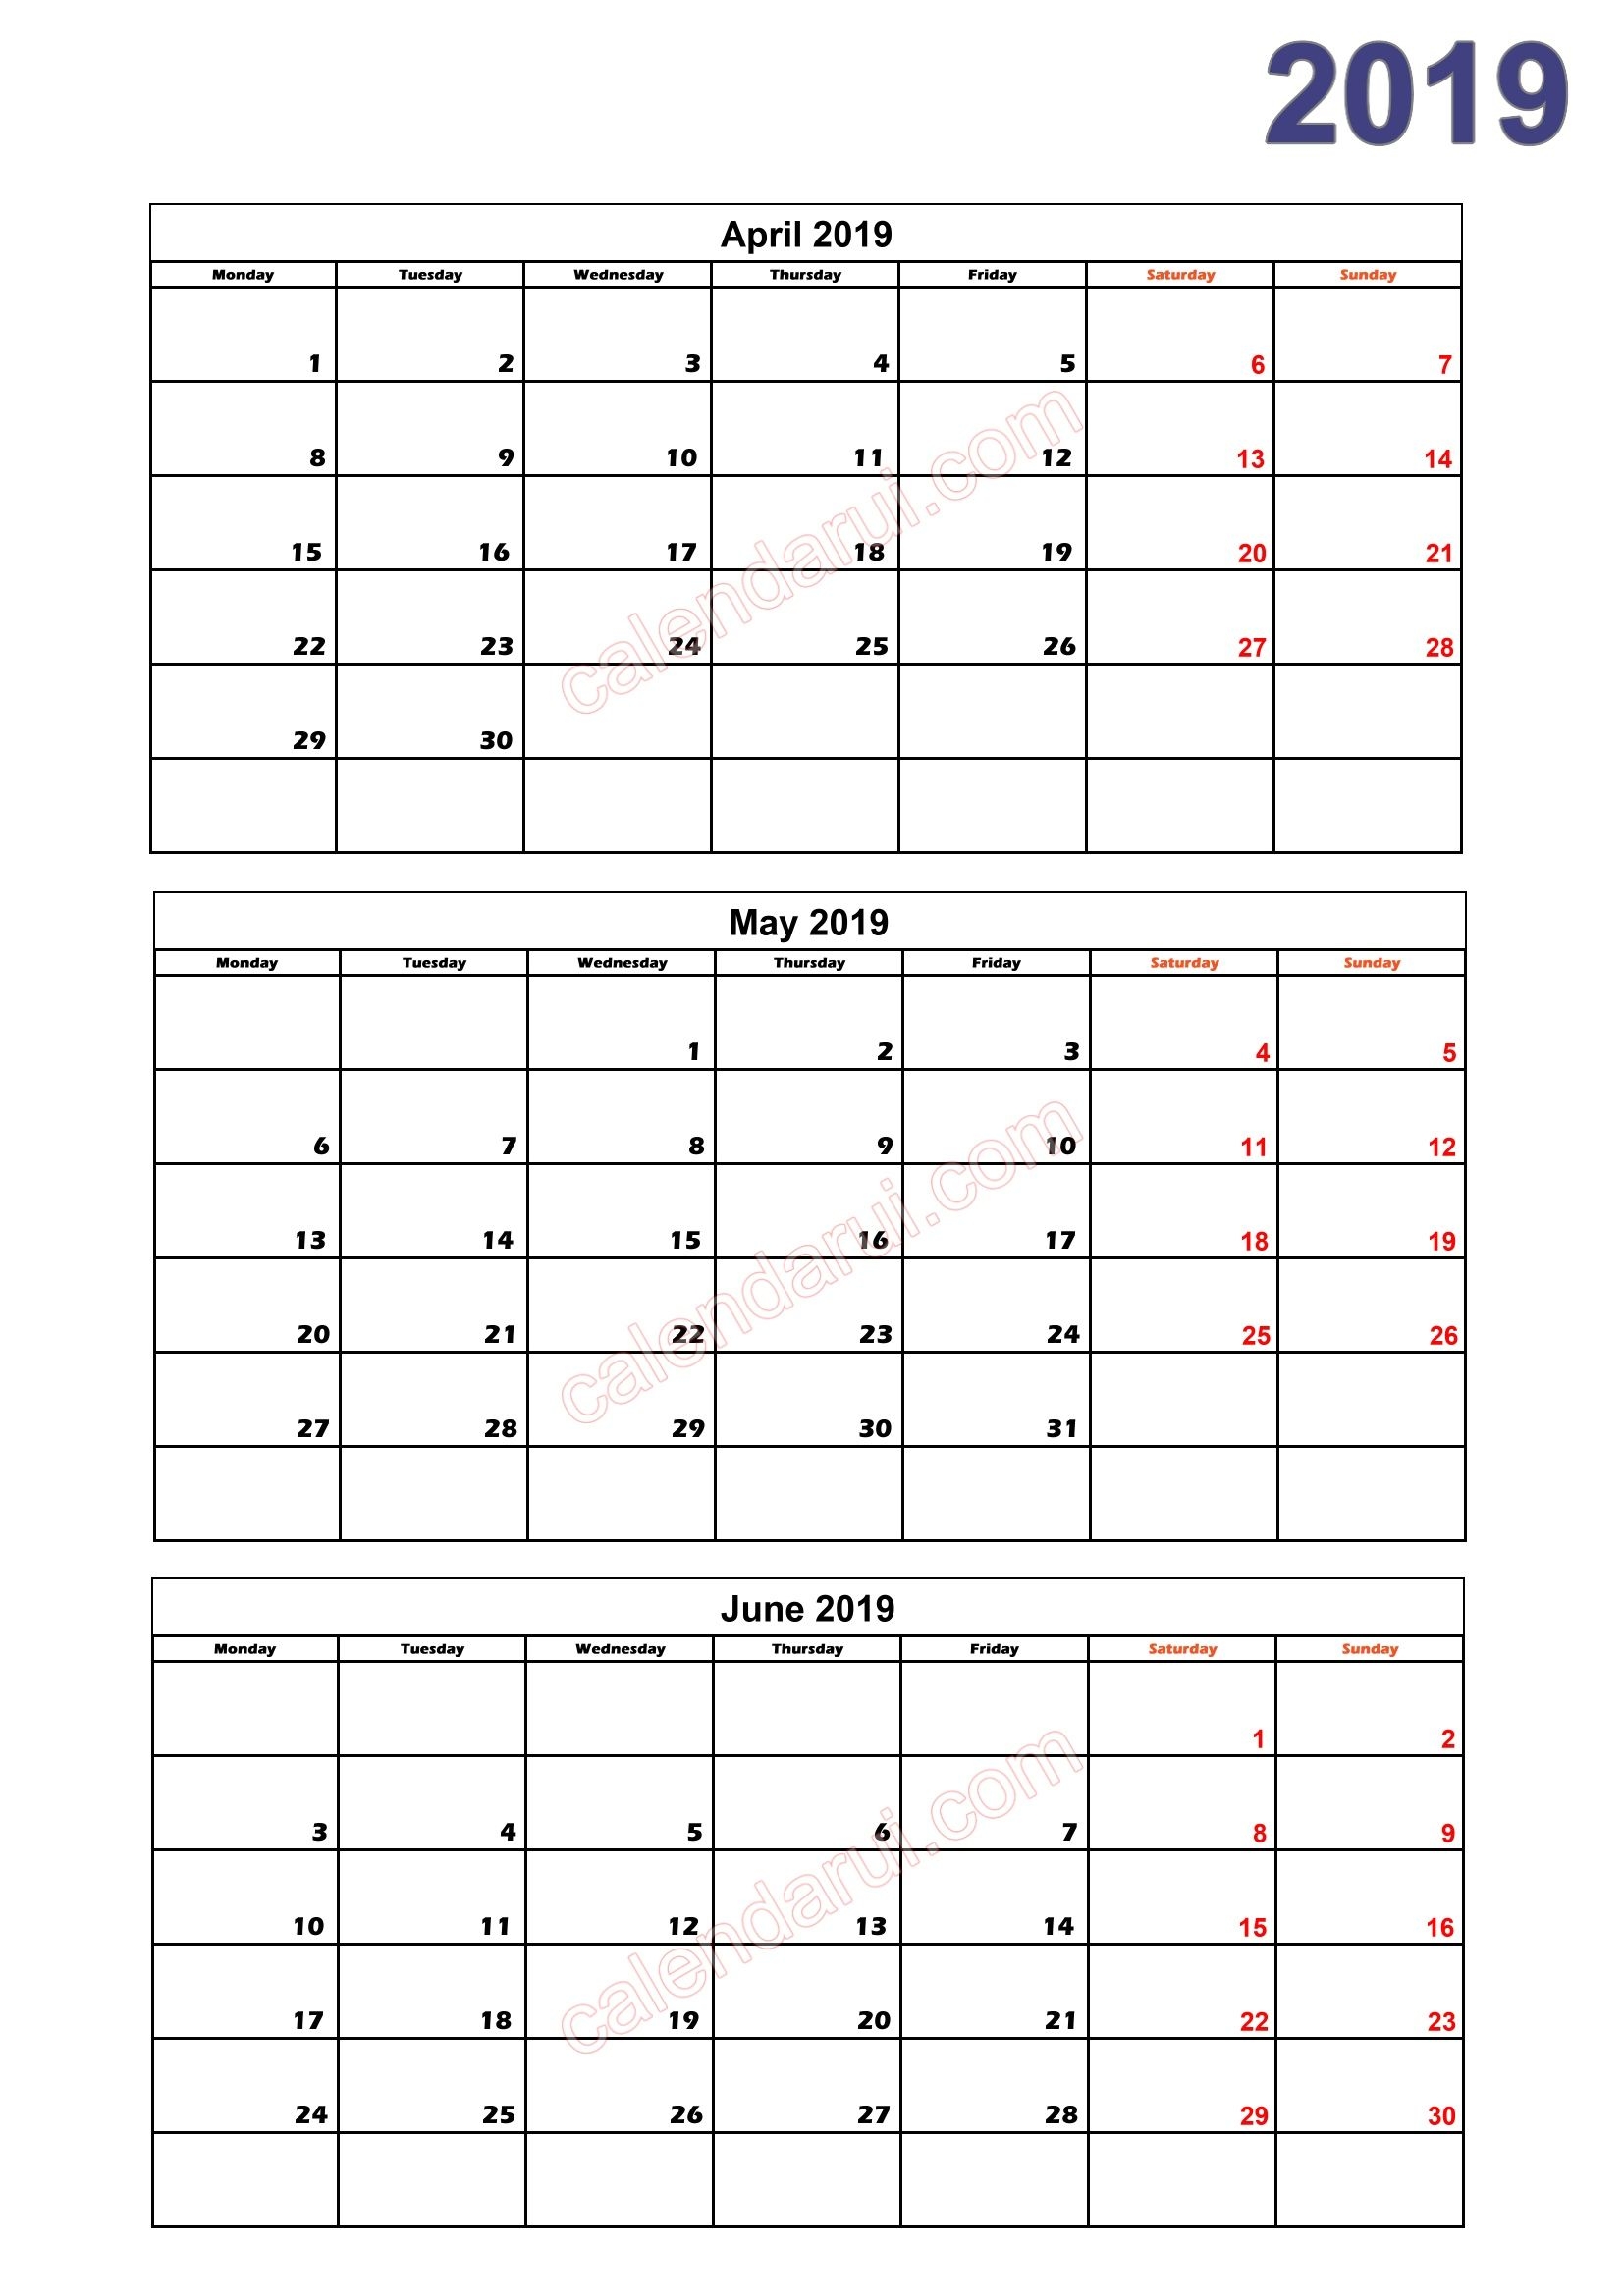 2019 Quarterly Calendar Template